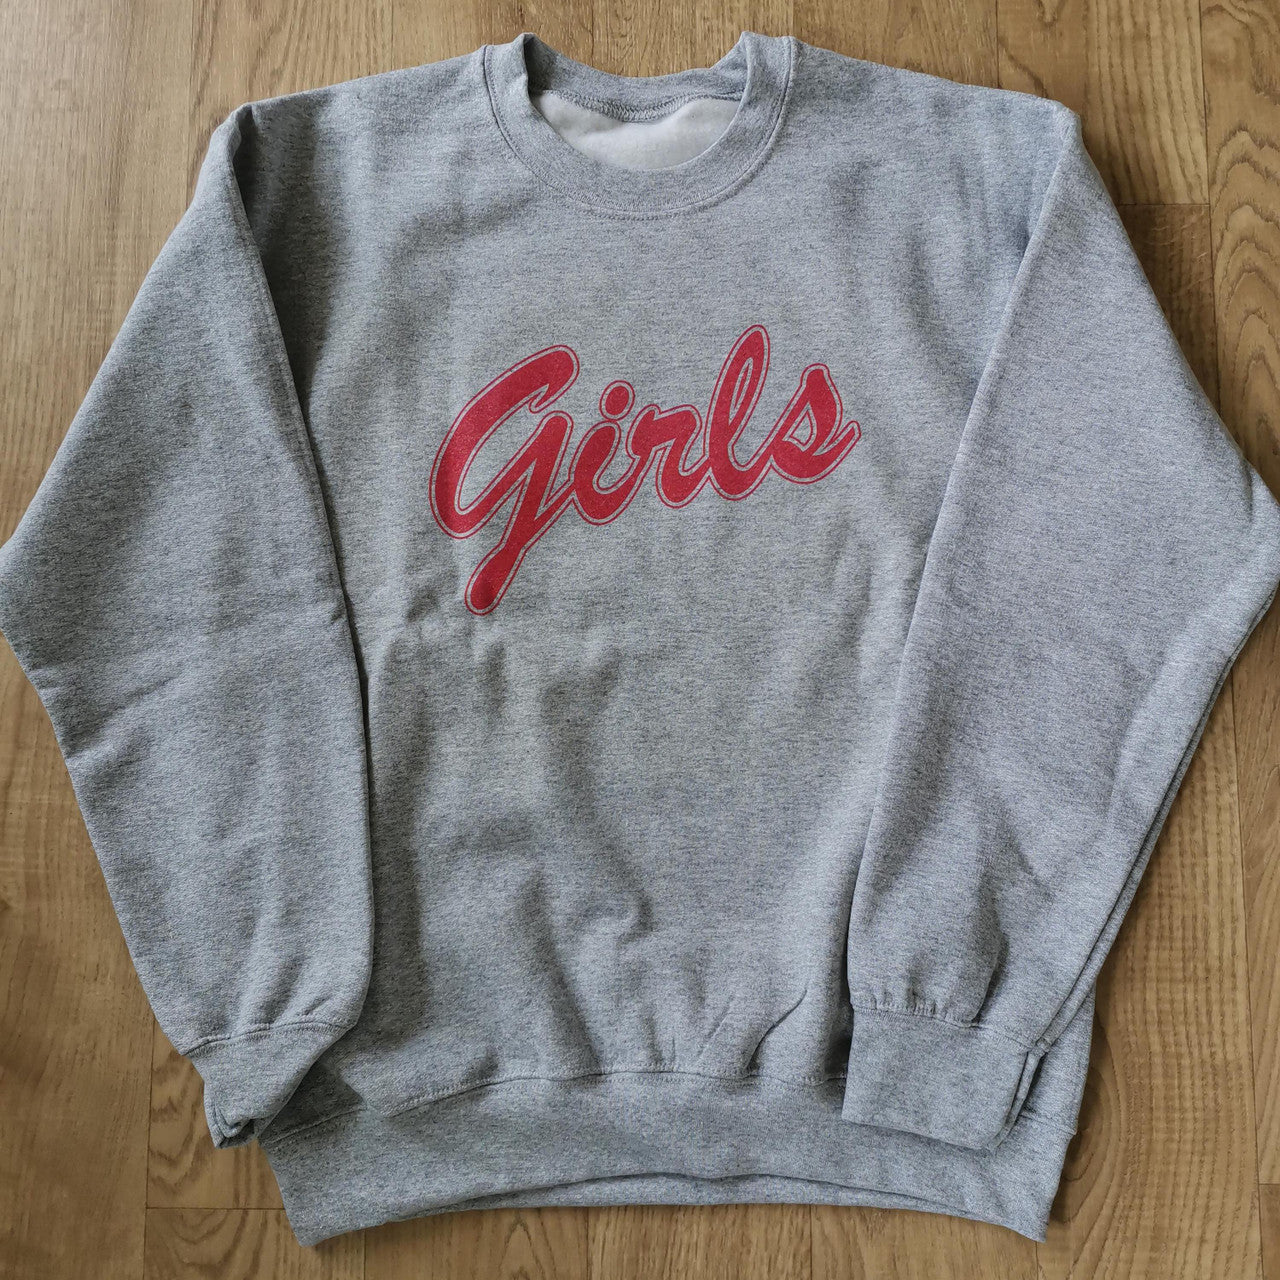 Monica Girls KiSS Unisex Premium Sweatshirt - Courtney Cox Gellar Friends TV Show Inspired - 90s Sport